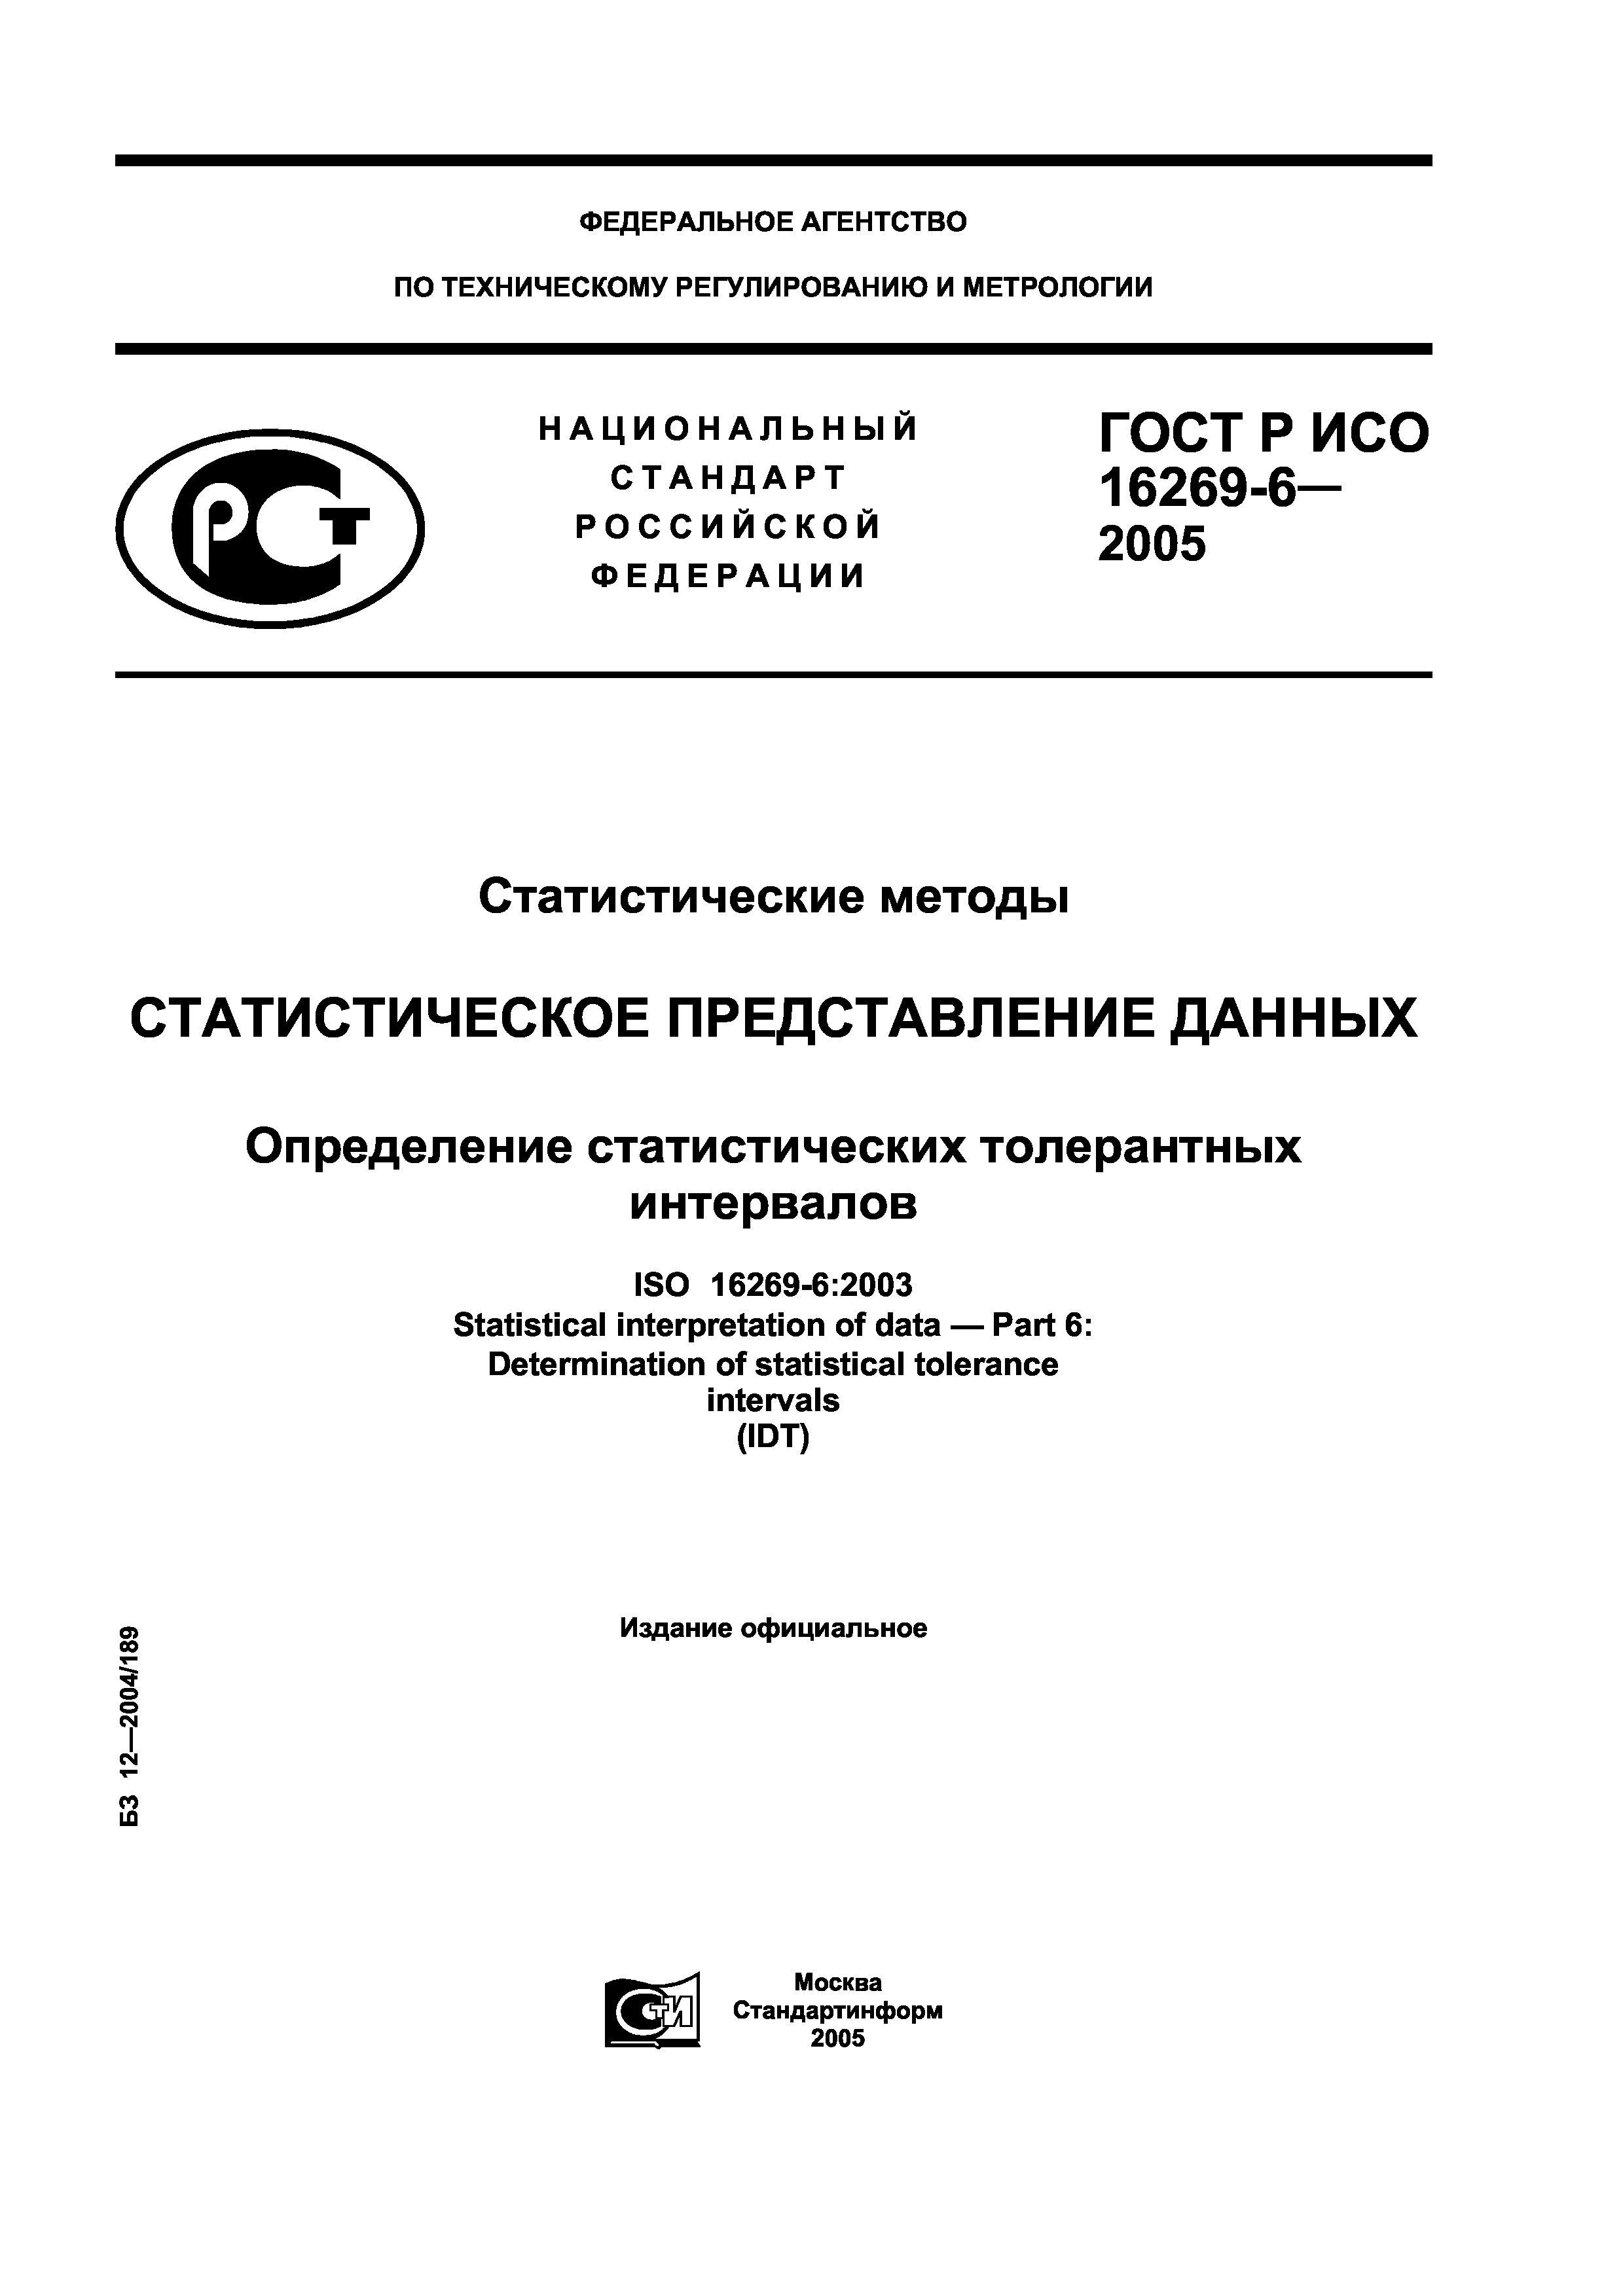 ГОСТ Р ИСО 16269-6-2005